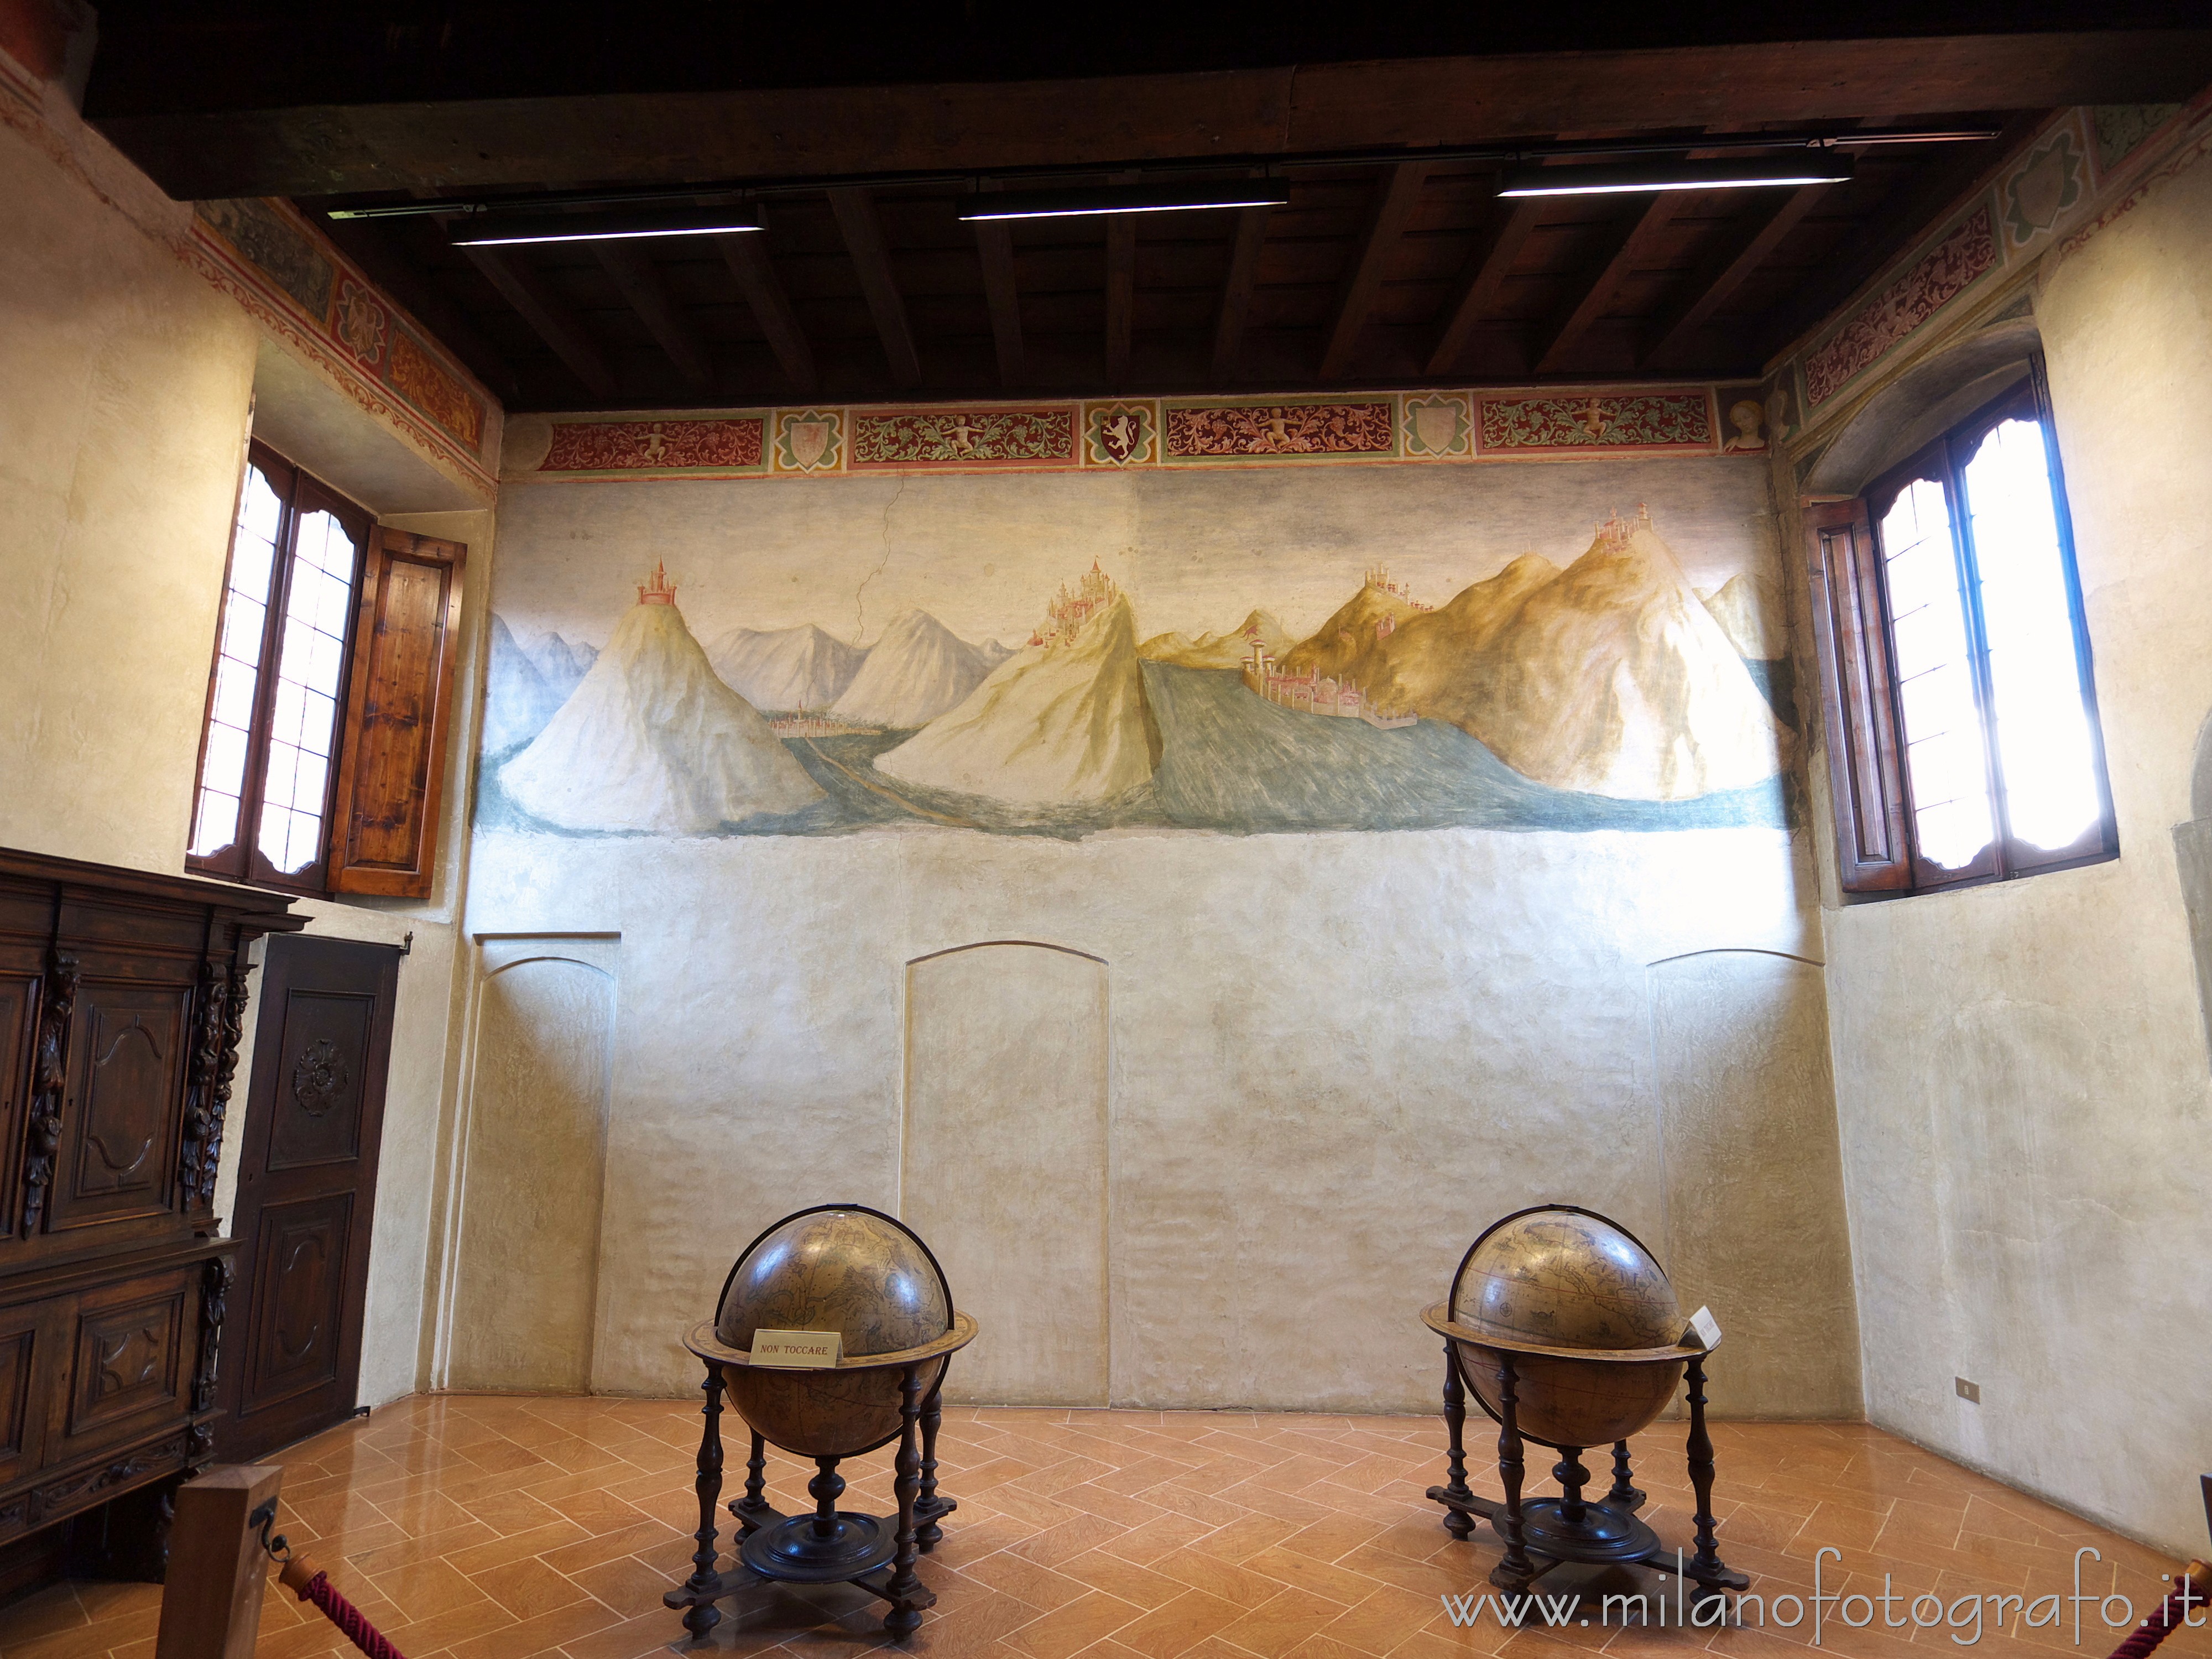 Castiglione Olona (Varese, Italy): Small office room in Branda Palace - Castiglione Olona (Varese, Italy)